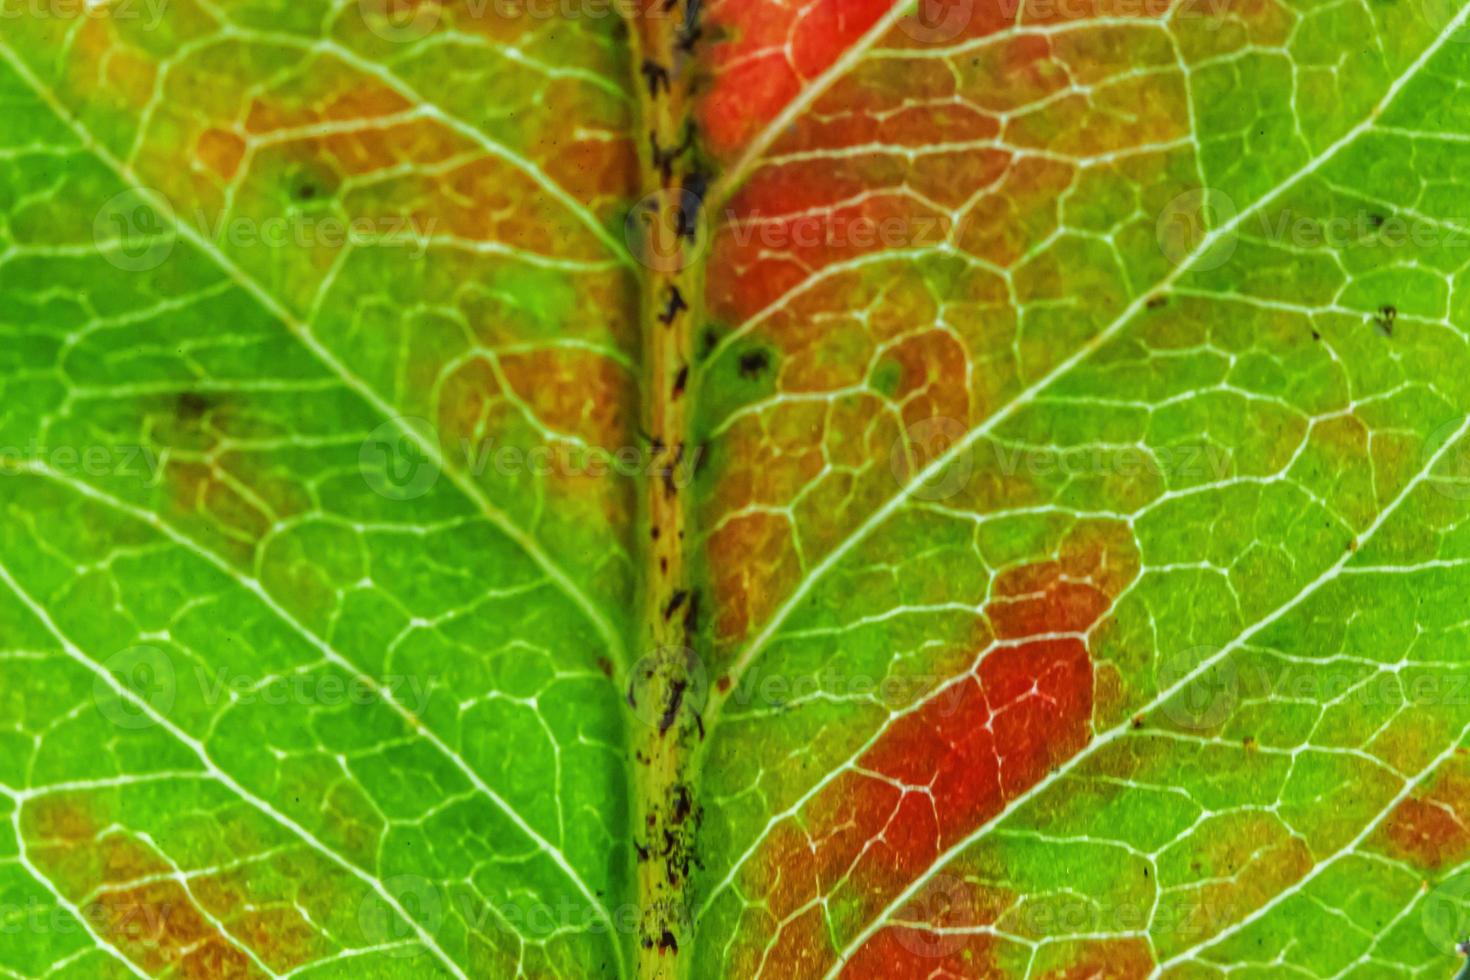 gros plan automne automne texture macro extrême vue de feuille de bois vert orange rouge feuille d'arbre lueur dans le fond du soleil. fond d'écran nature inspirant octobre ou septembre. concept de changement de saisons. photo